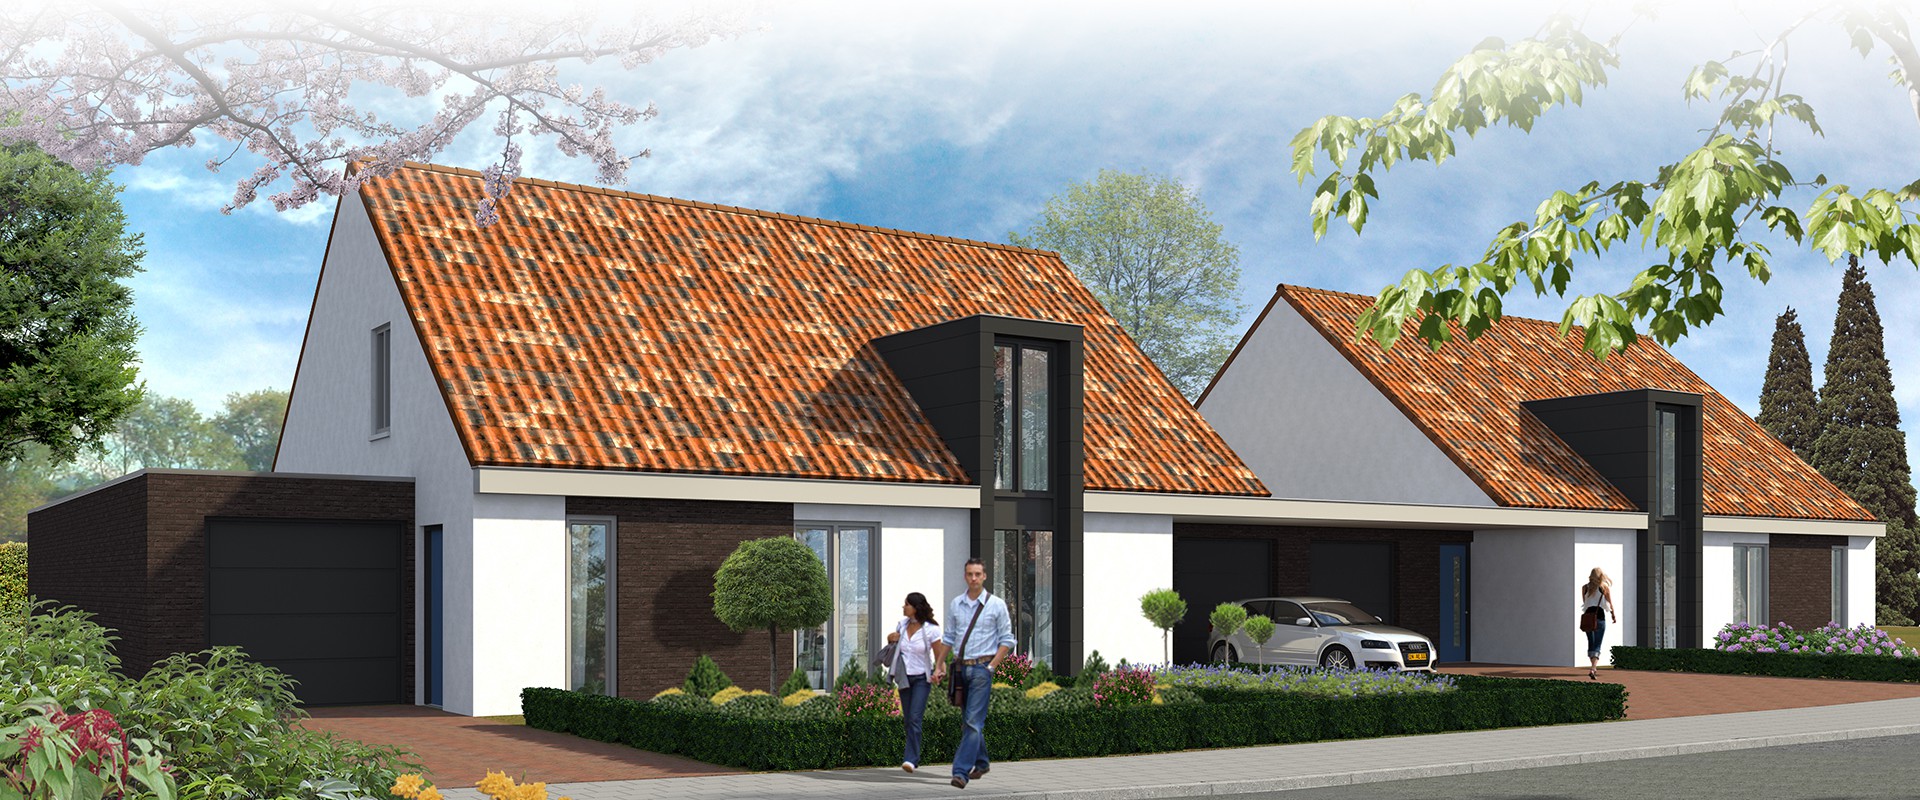 Nieuwbouwwoning kopen Horst aan de Maas